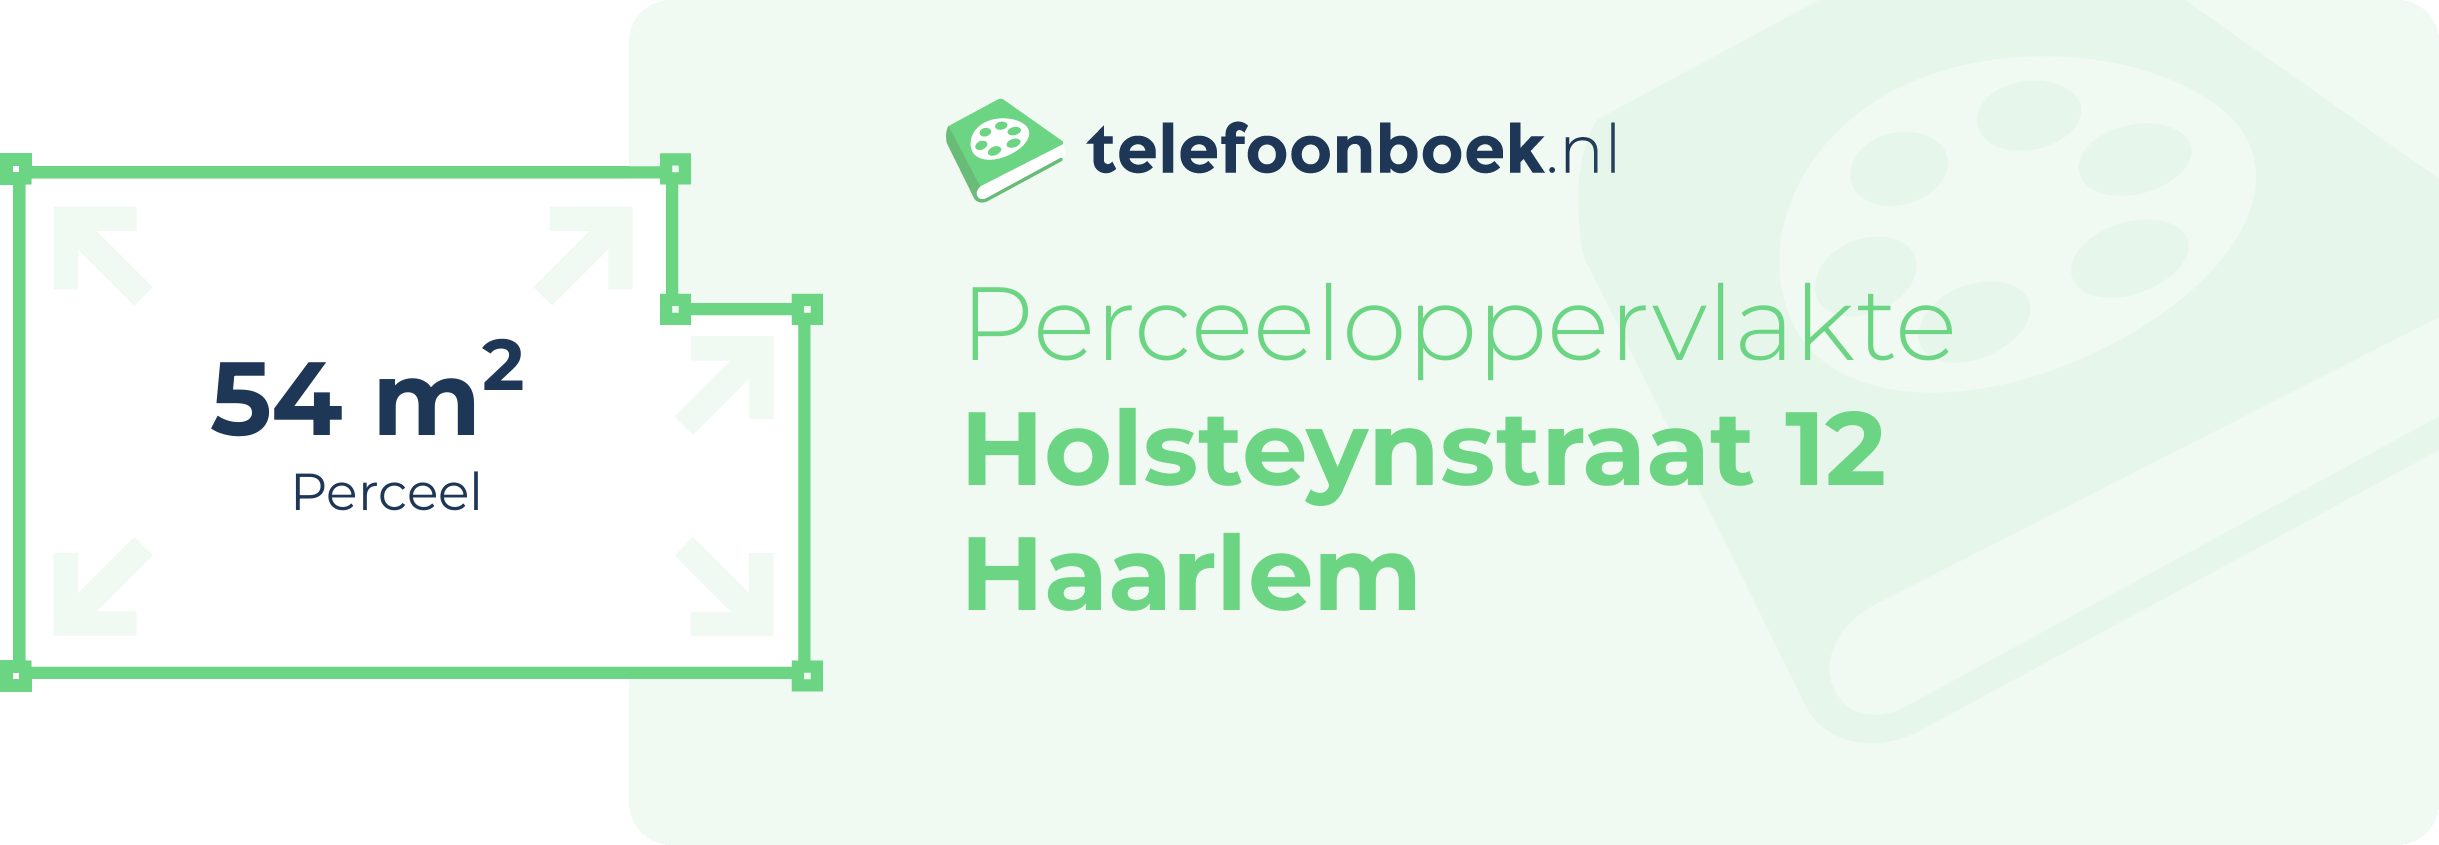 Perceeloppervlakte Holsteynstraat 12 Haarlem